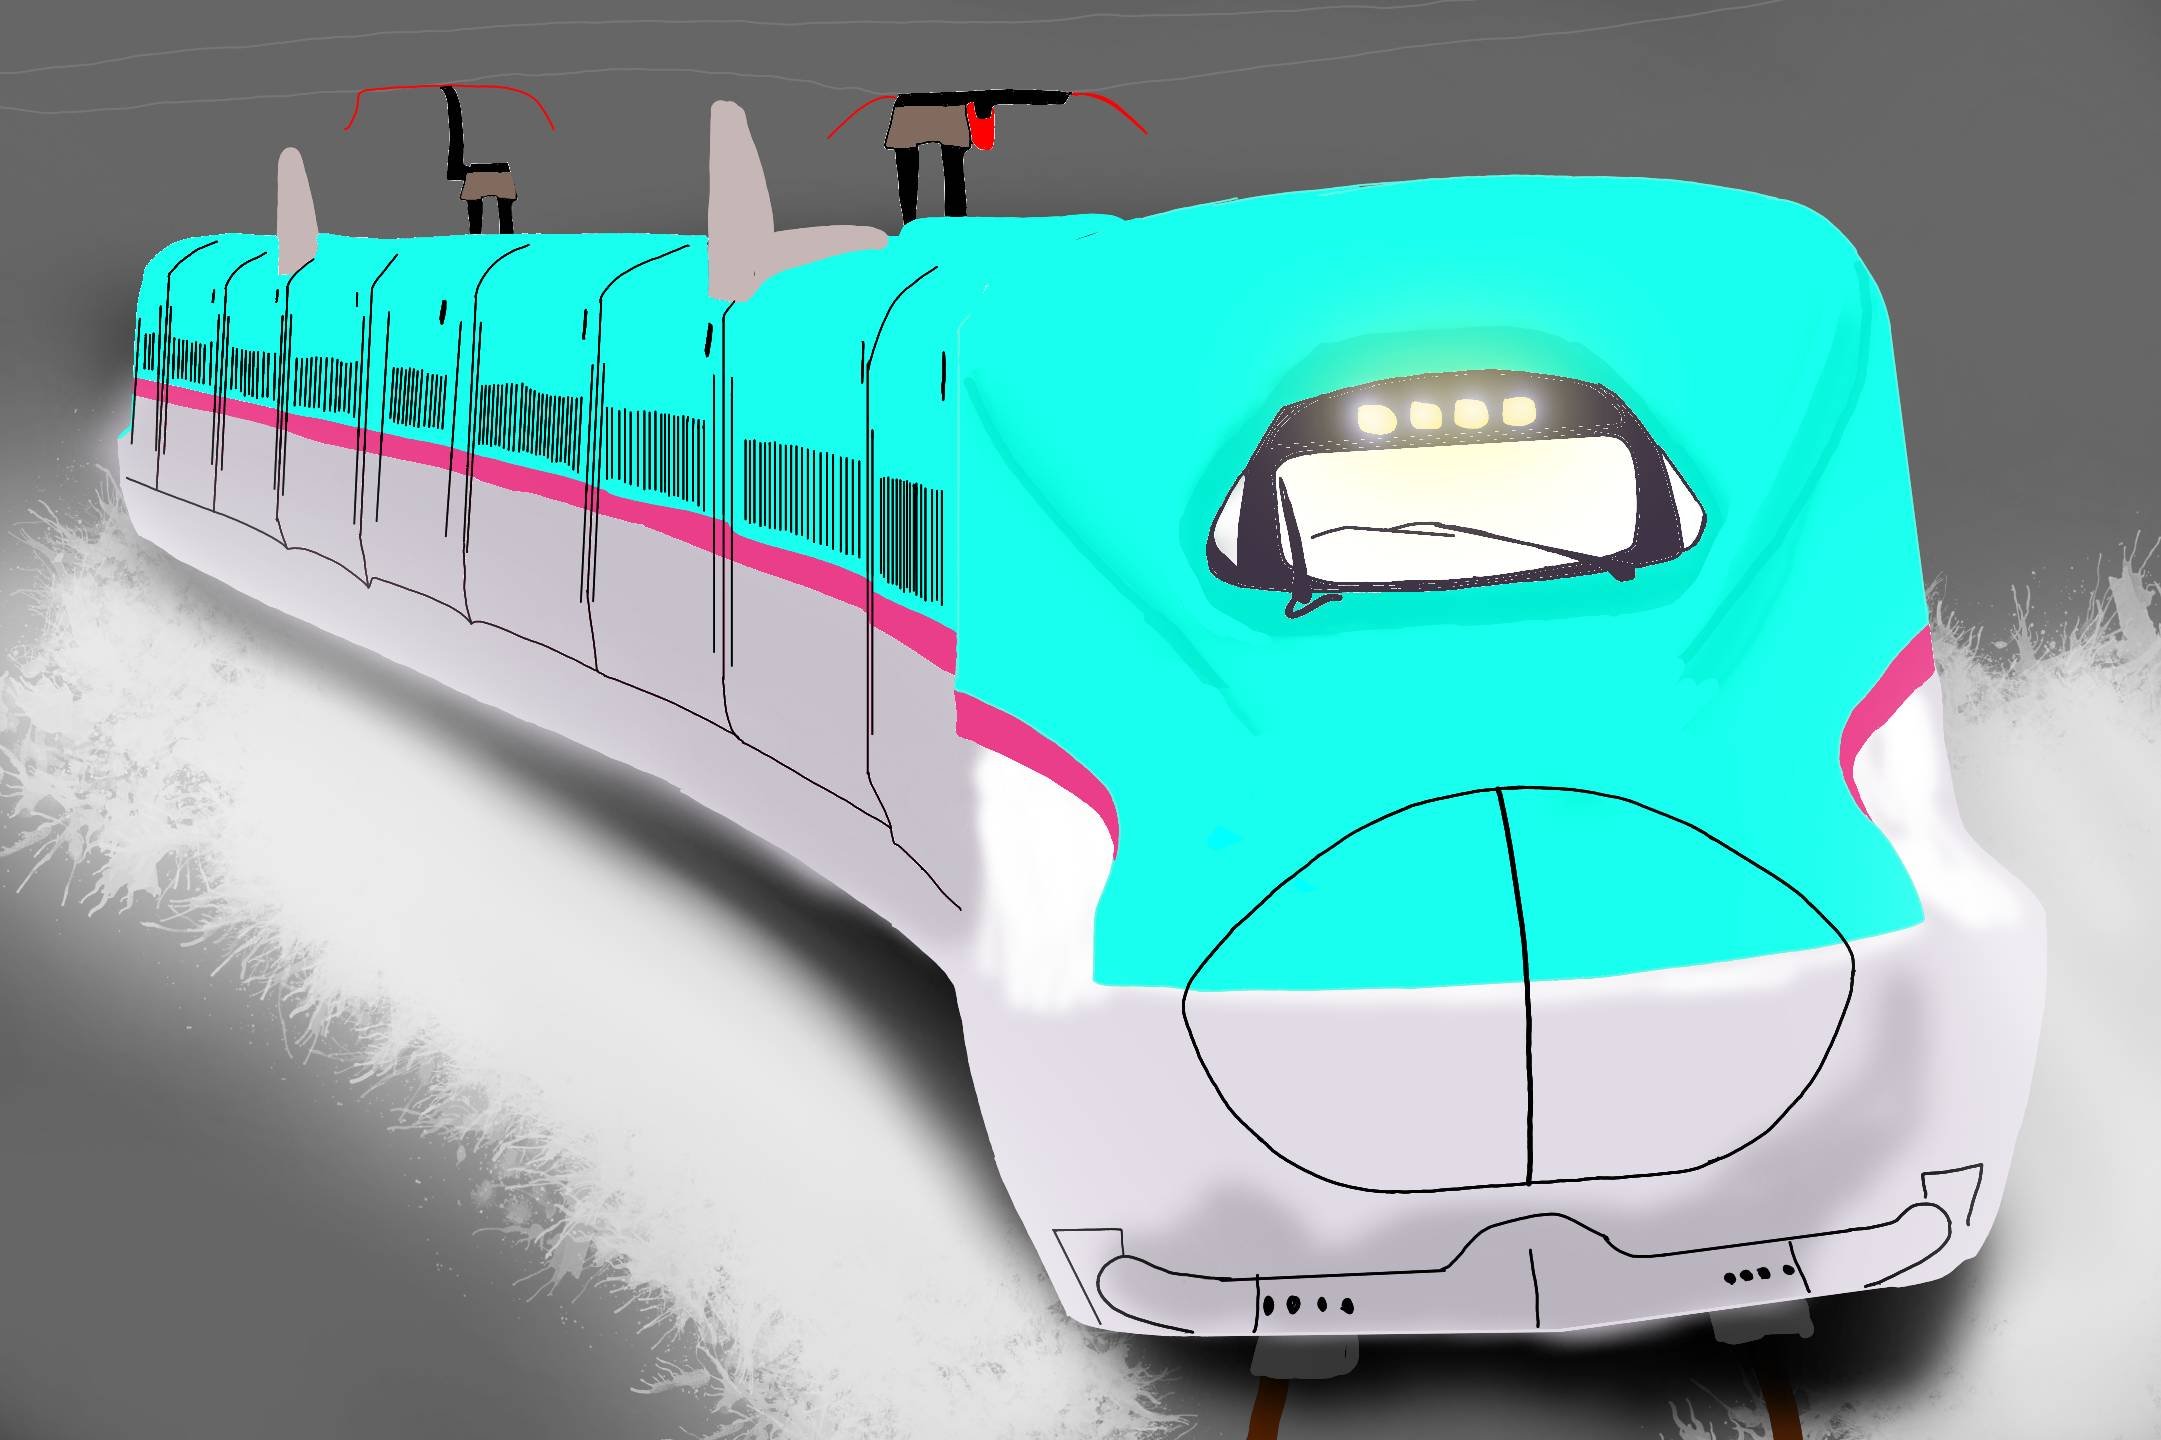 モアイ E5系描きました デビューして10年経ち東北新幹線では主役になりましたね まだ乗ったことがないので乗ってみたいです Jr東日本 東北新幹線 E5系 はやぶさ 新幹線 鉄道イラスト 描き鉄 鉄道 鉄道好きな人と繋がりたい 絵描きさんと